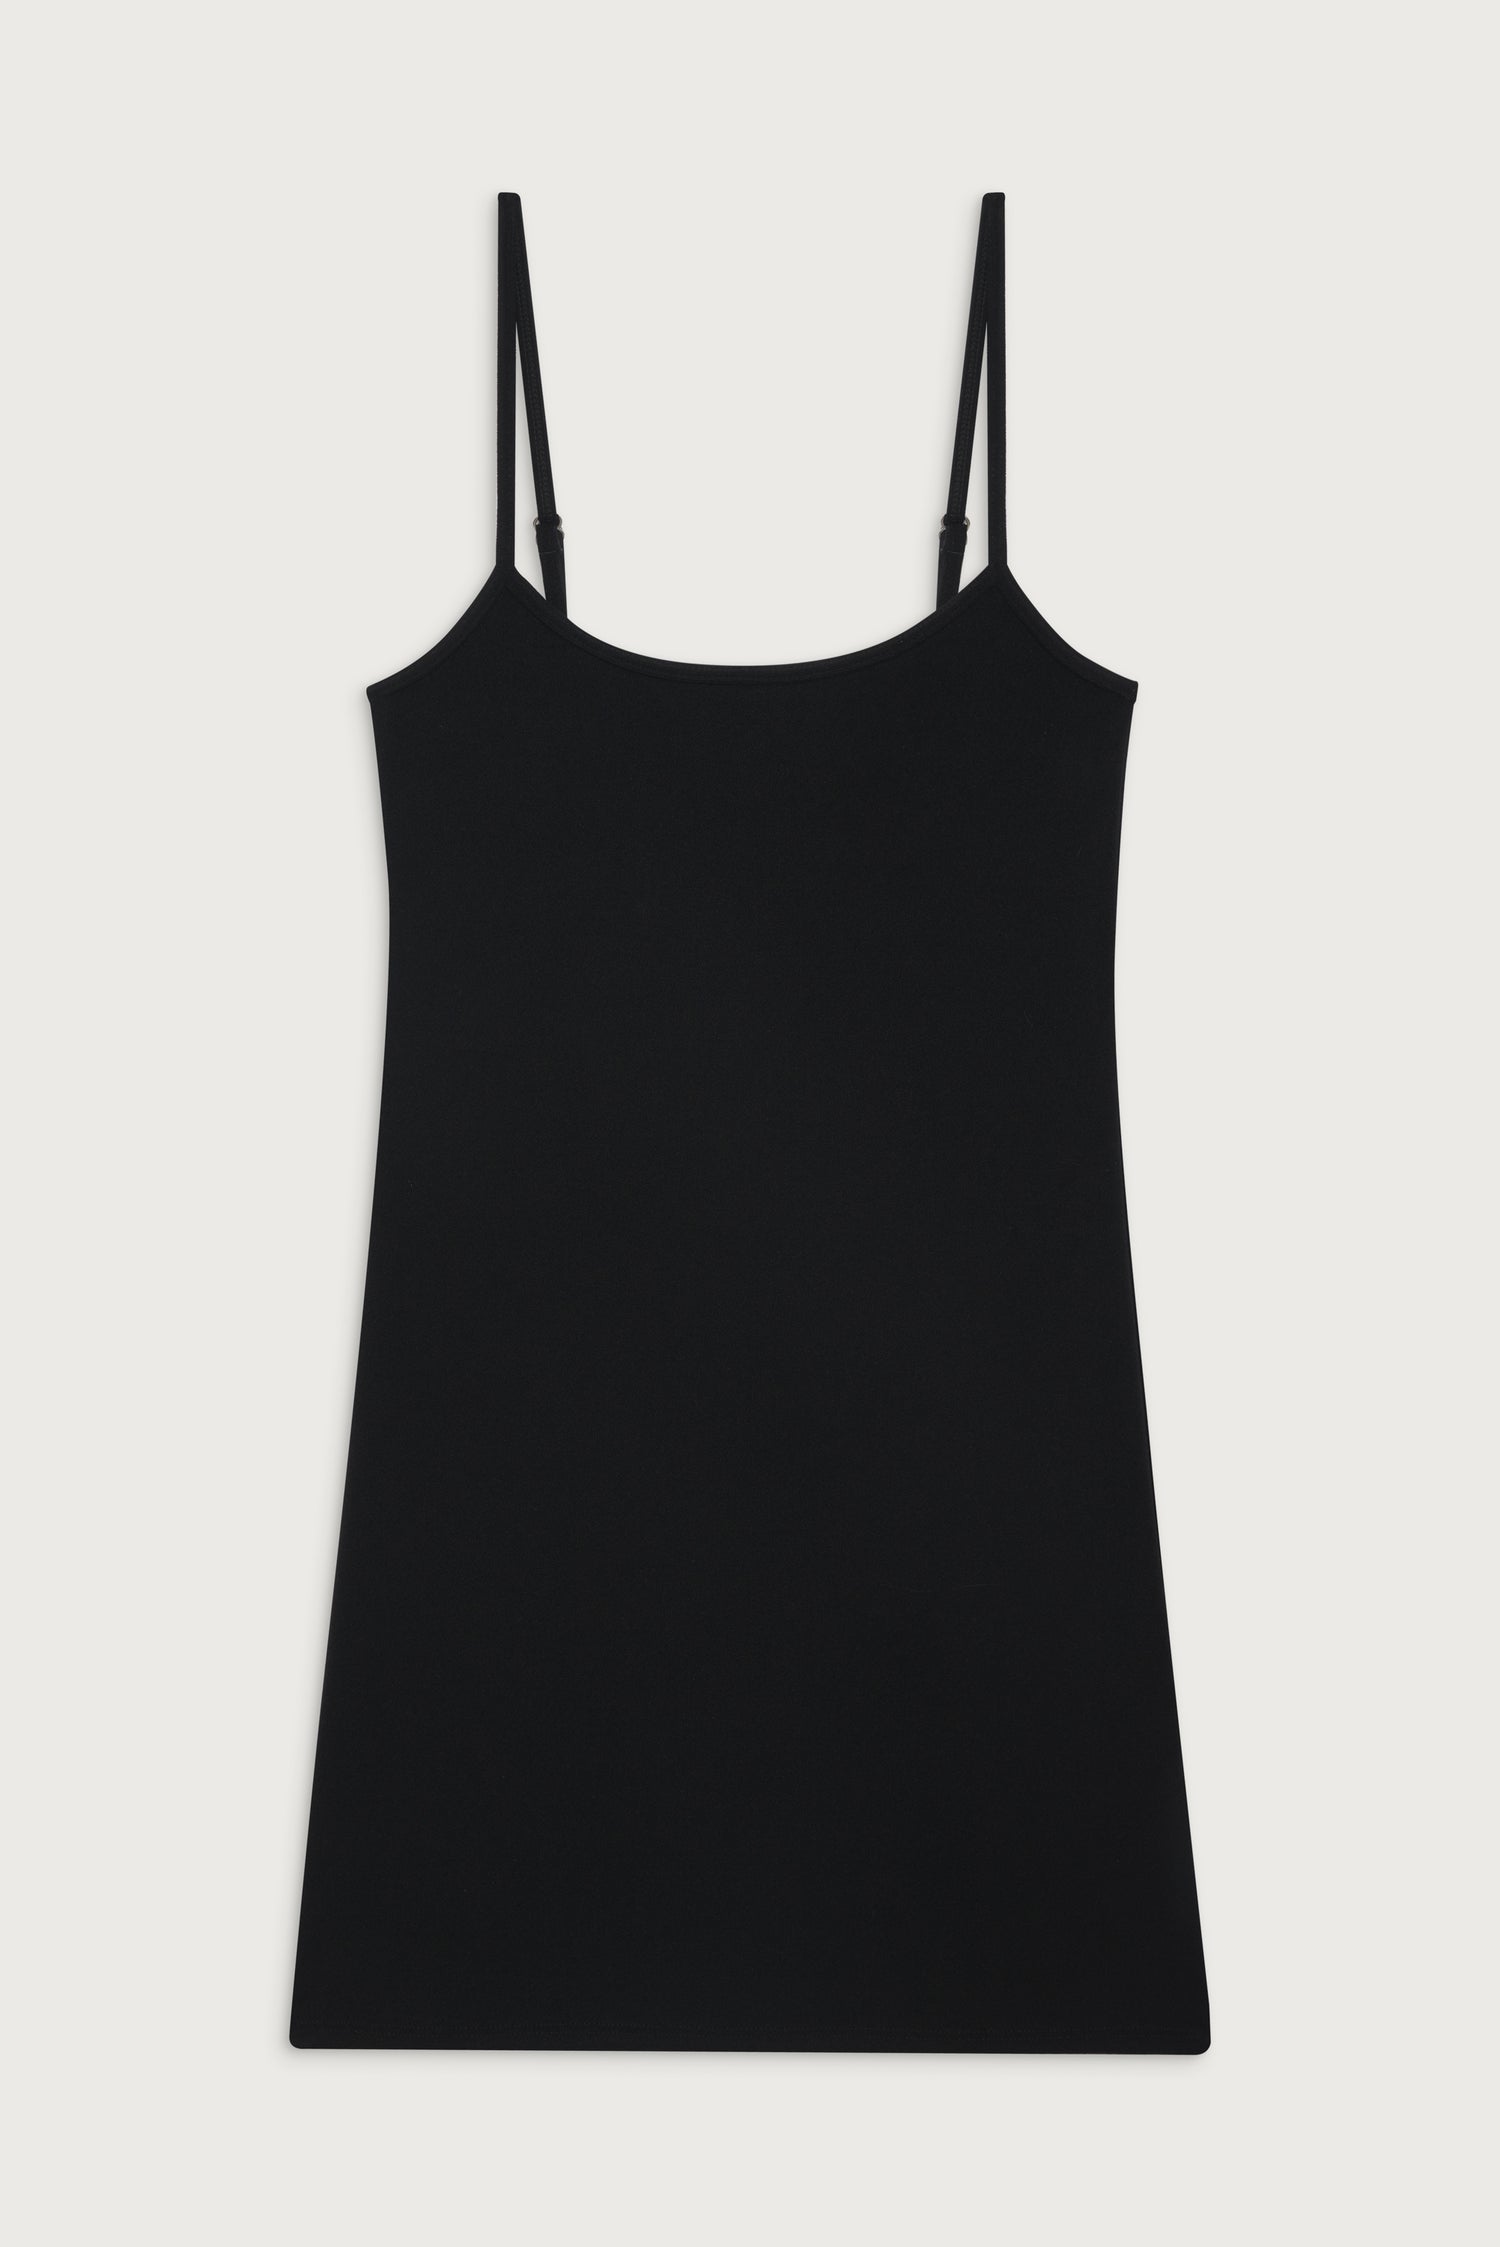 Gwen Terry Mini Dress - Black